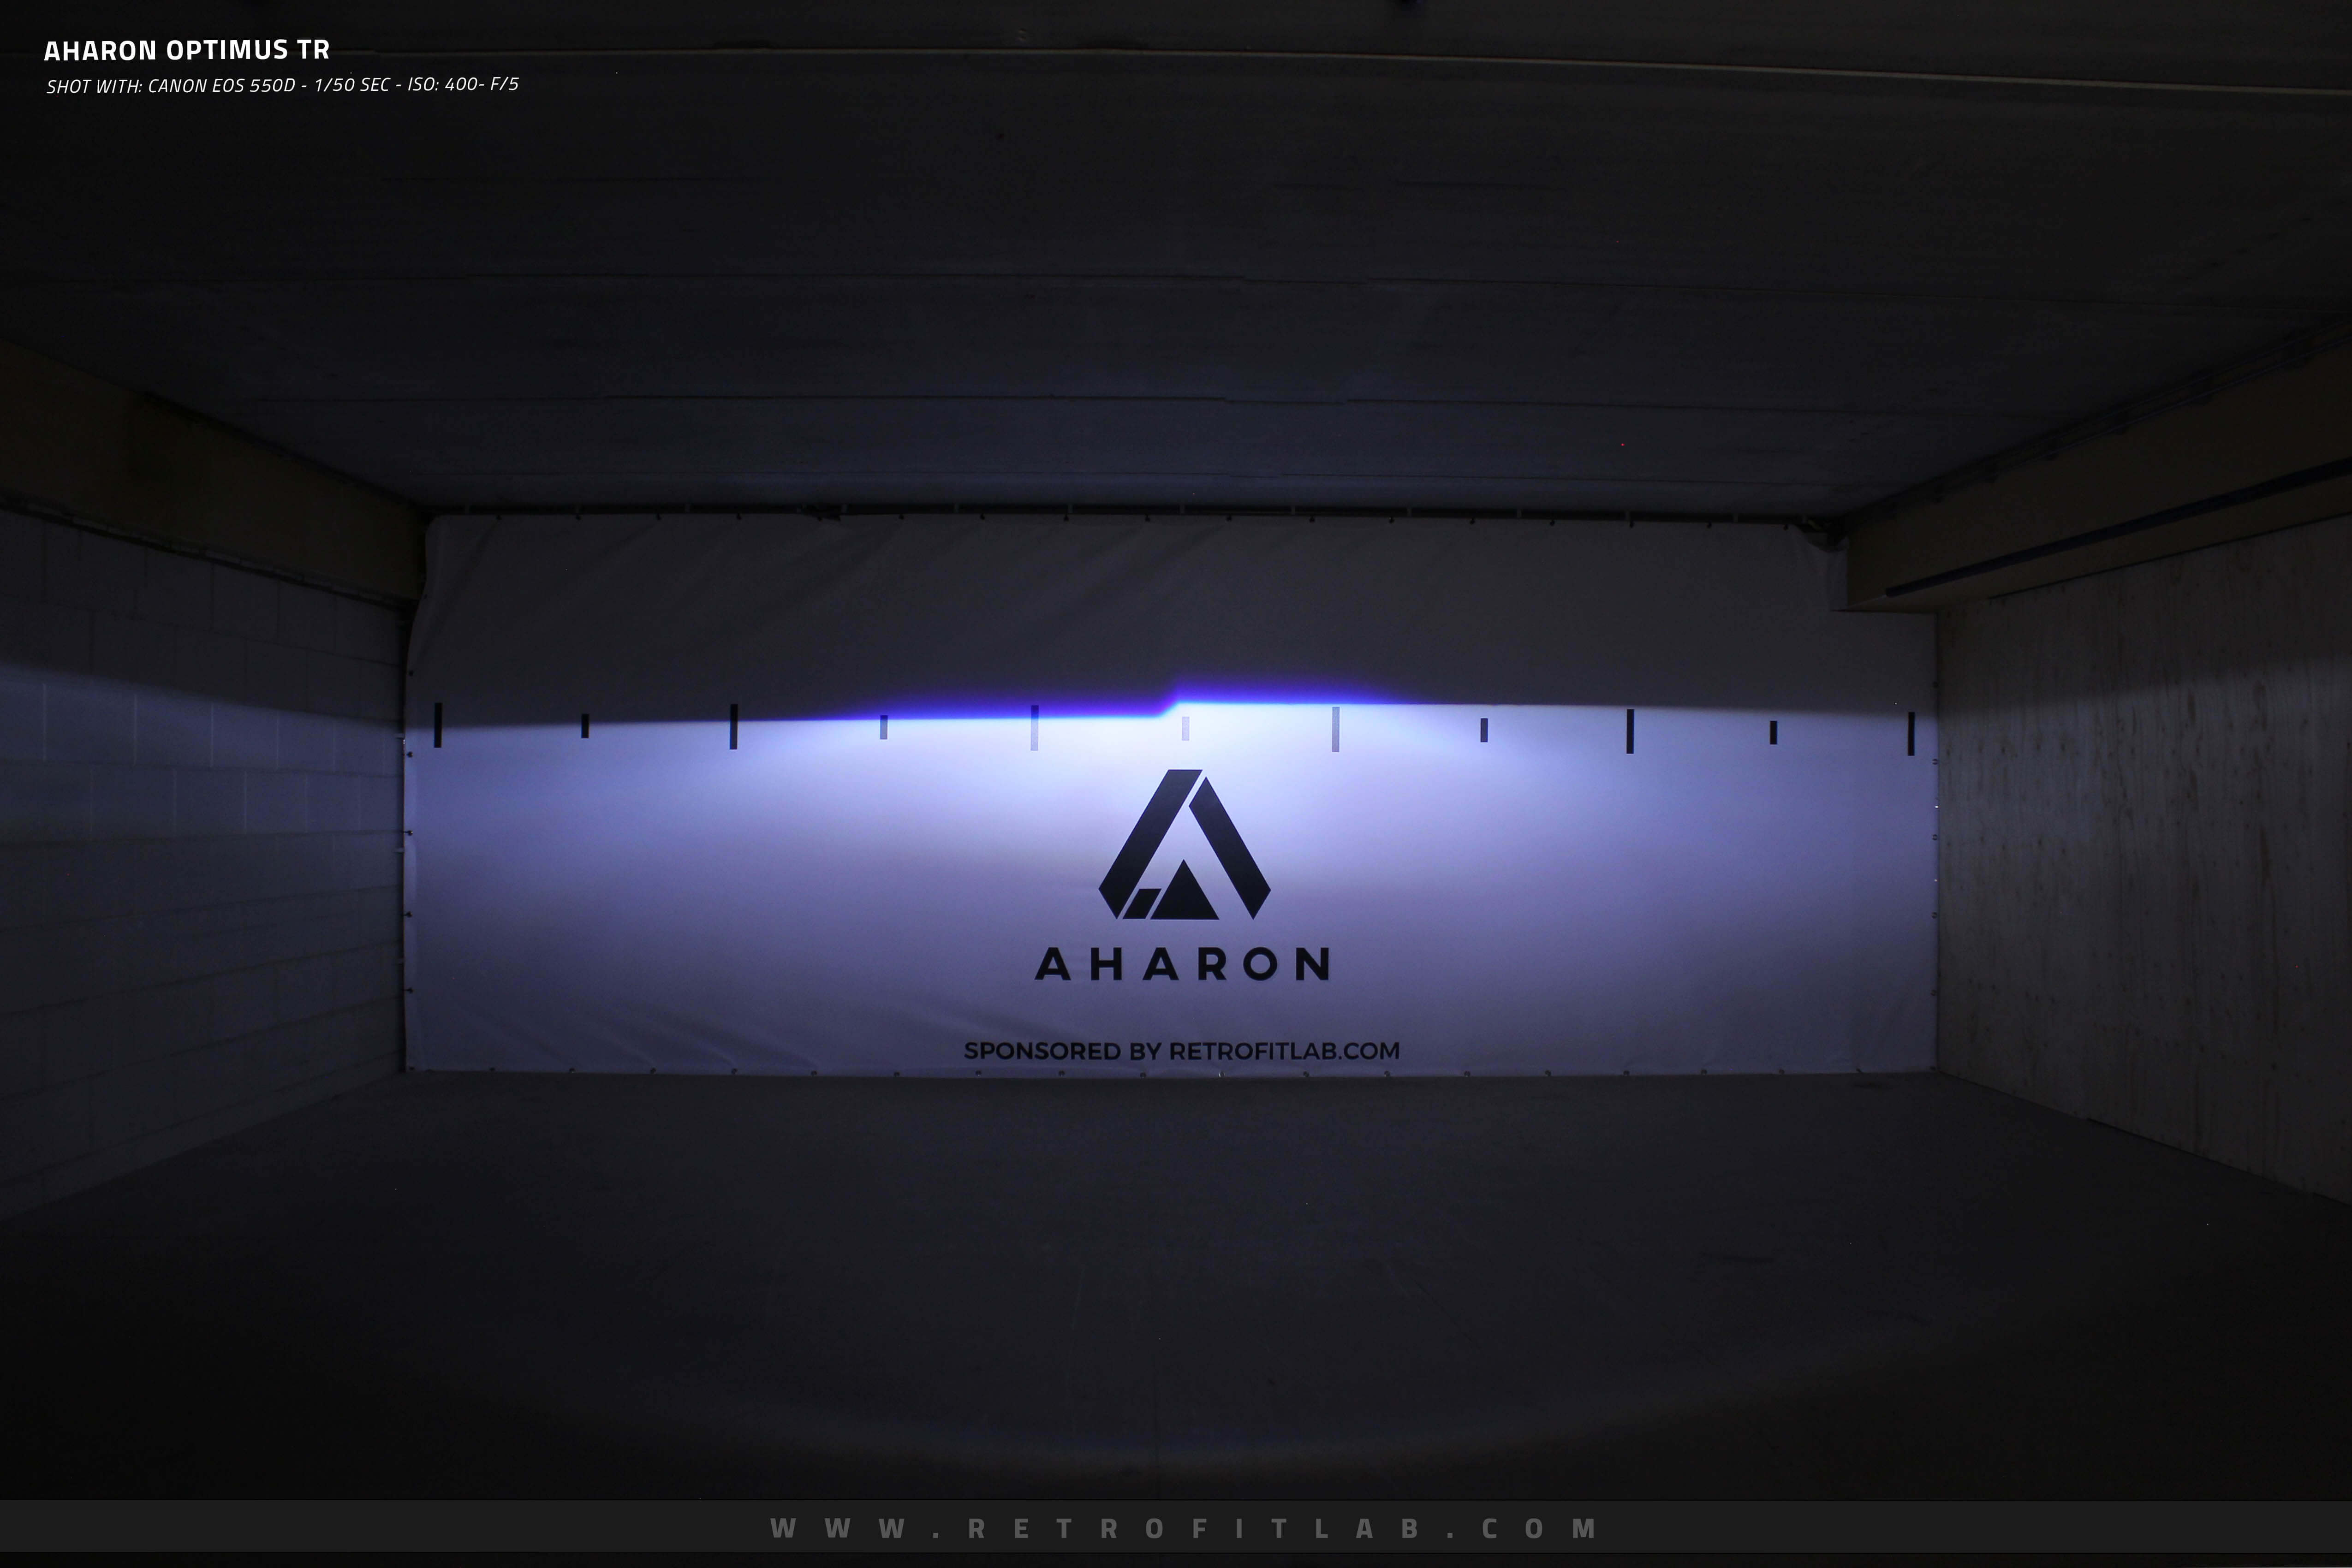 Aharon Optimus TR - Bi-xenon projectors